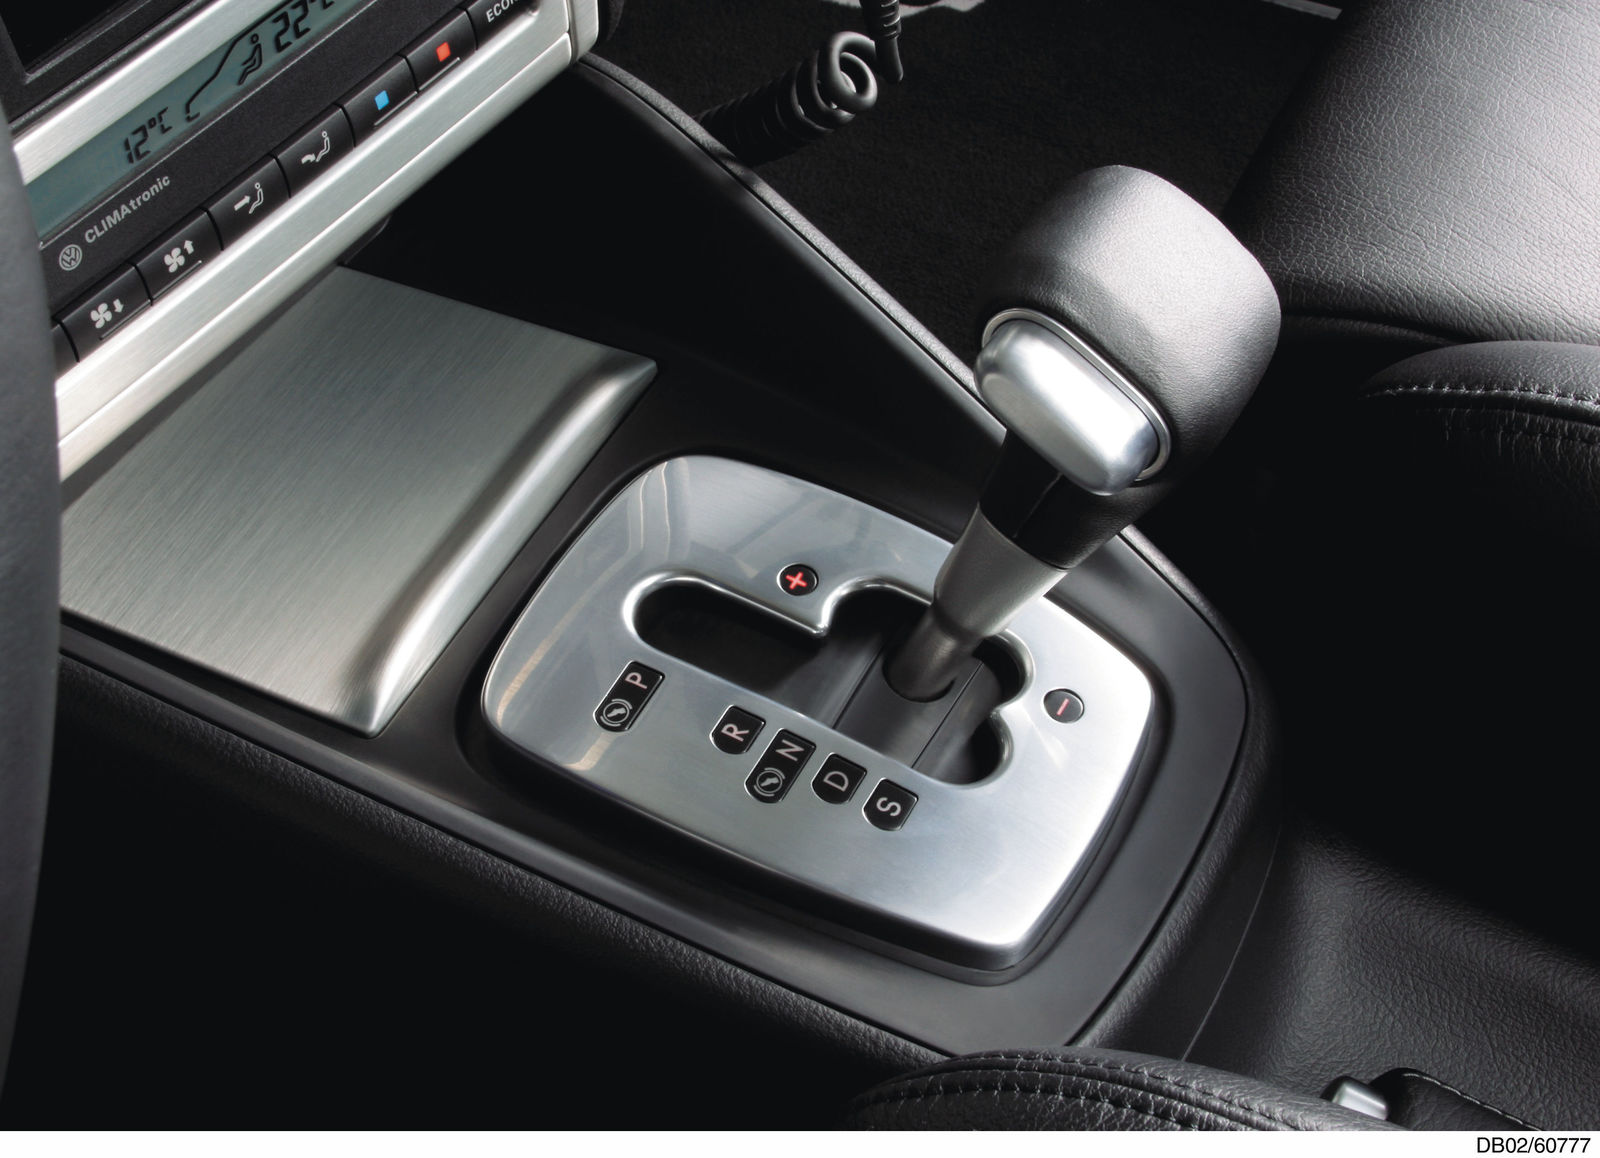 Volkswagen 6-speed DSG: Golf R32 lever gate